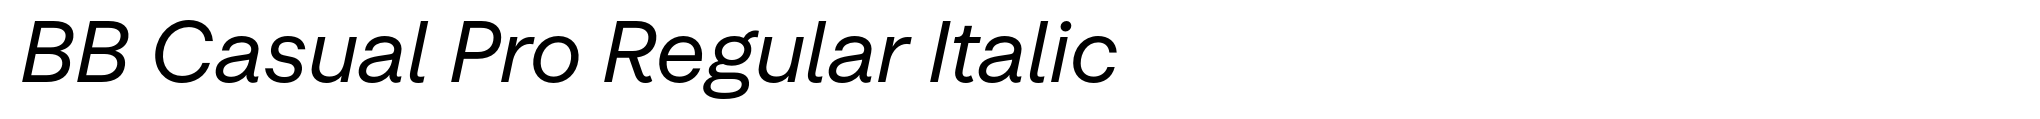 BB Casual Pro Regular Italic image